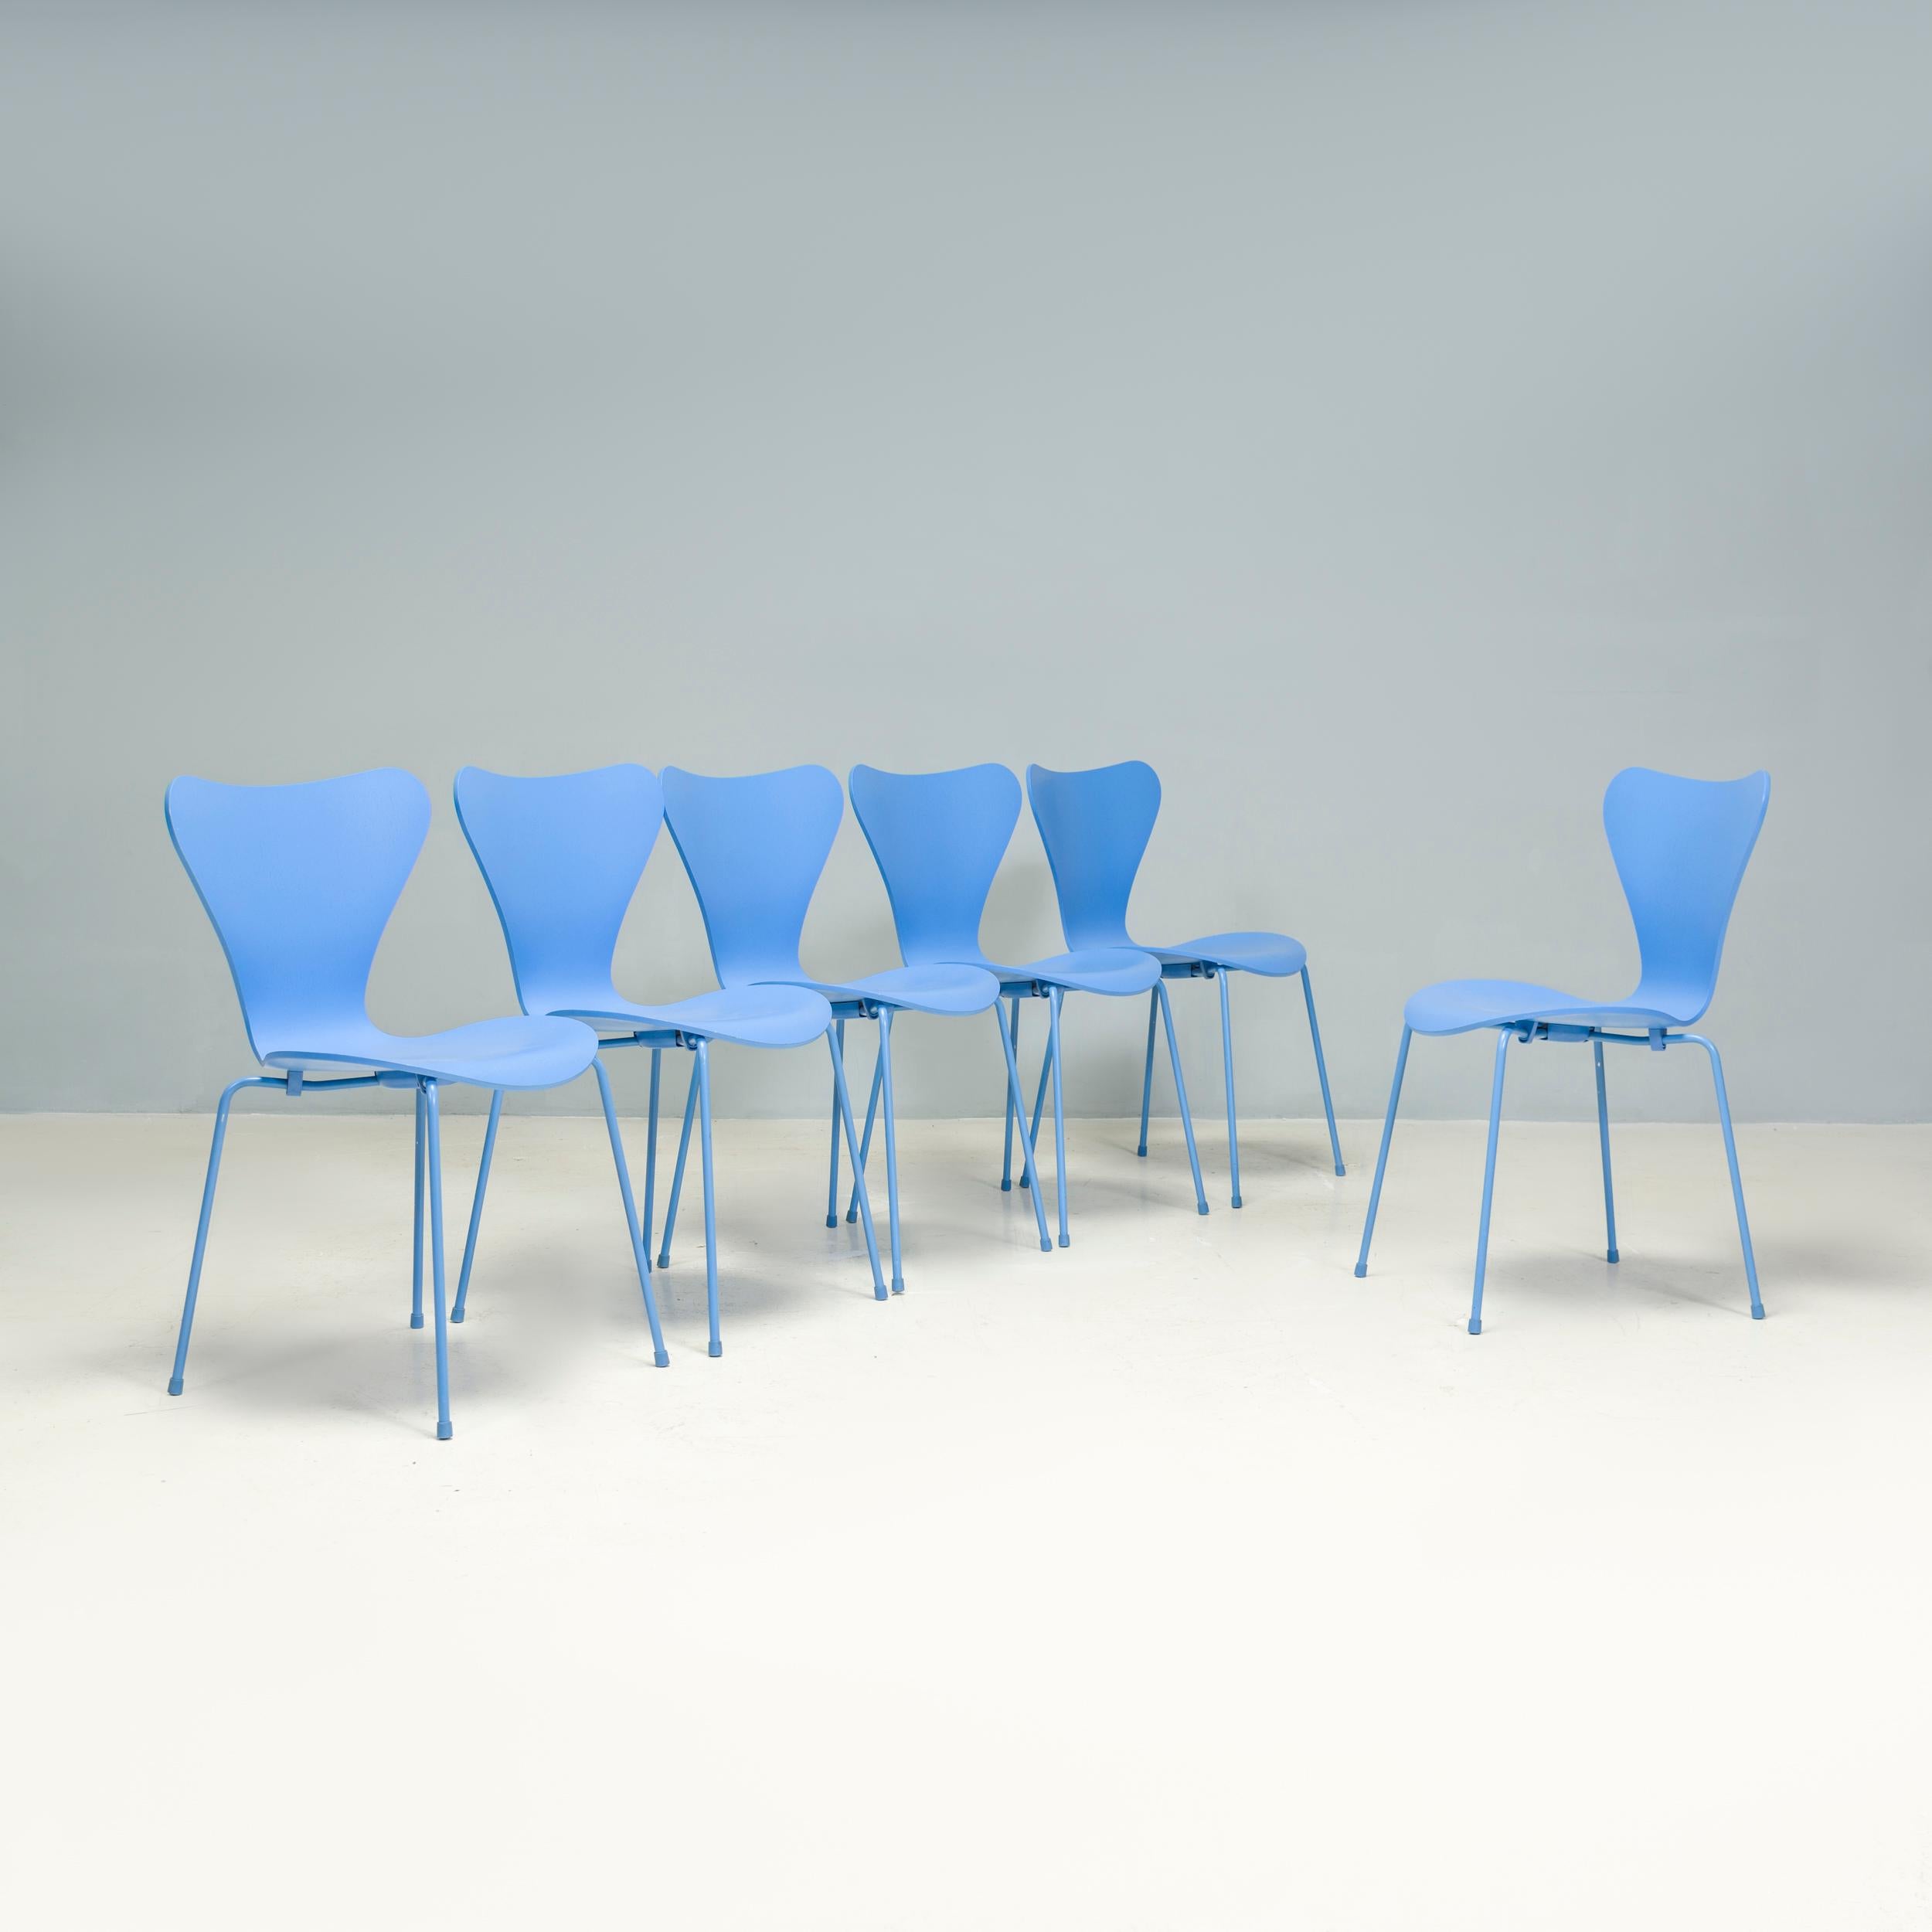 Véritable icône du design, la série 7 est devenue l'une des chaises les plus vendues de l'histoire. Conçue à l'origine par Arne Jacobsen en 1955 pour l'exposition H55 en Suède, la chaise Series 7 Dining est fabriquée par Fritz Hansen depuis lors.